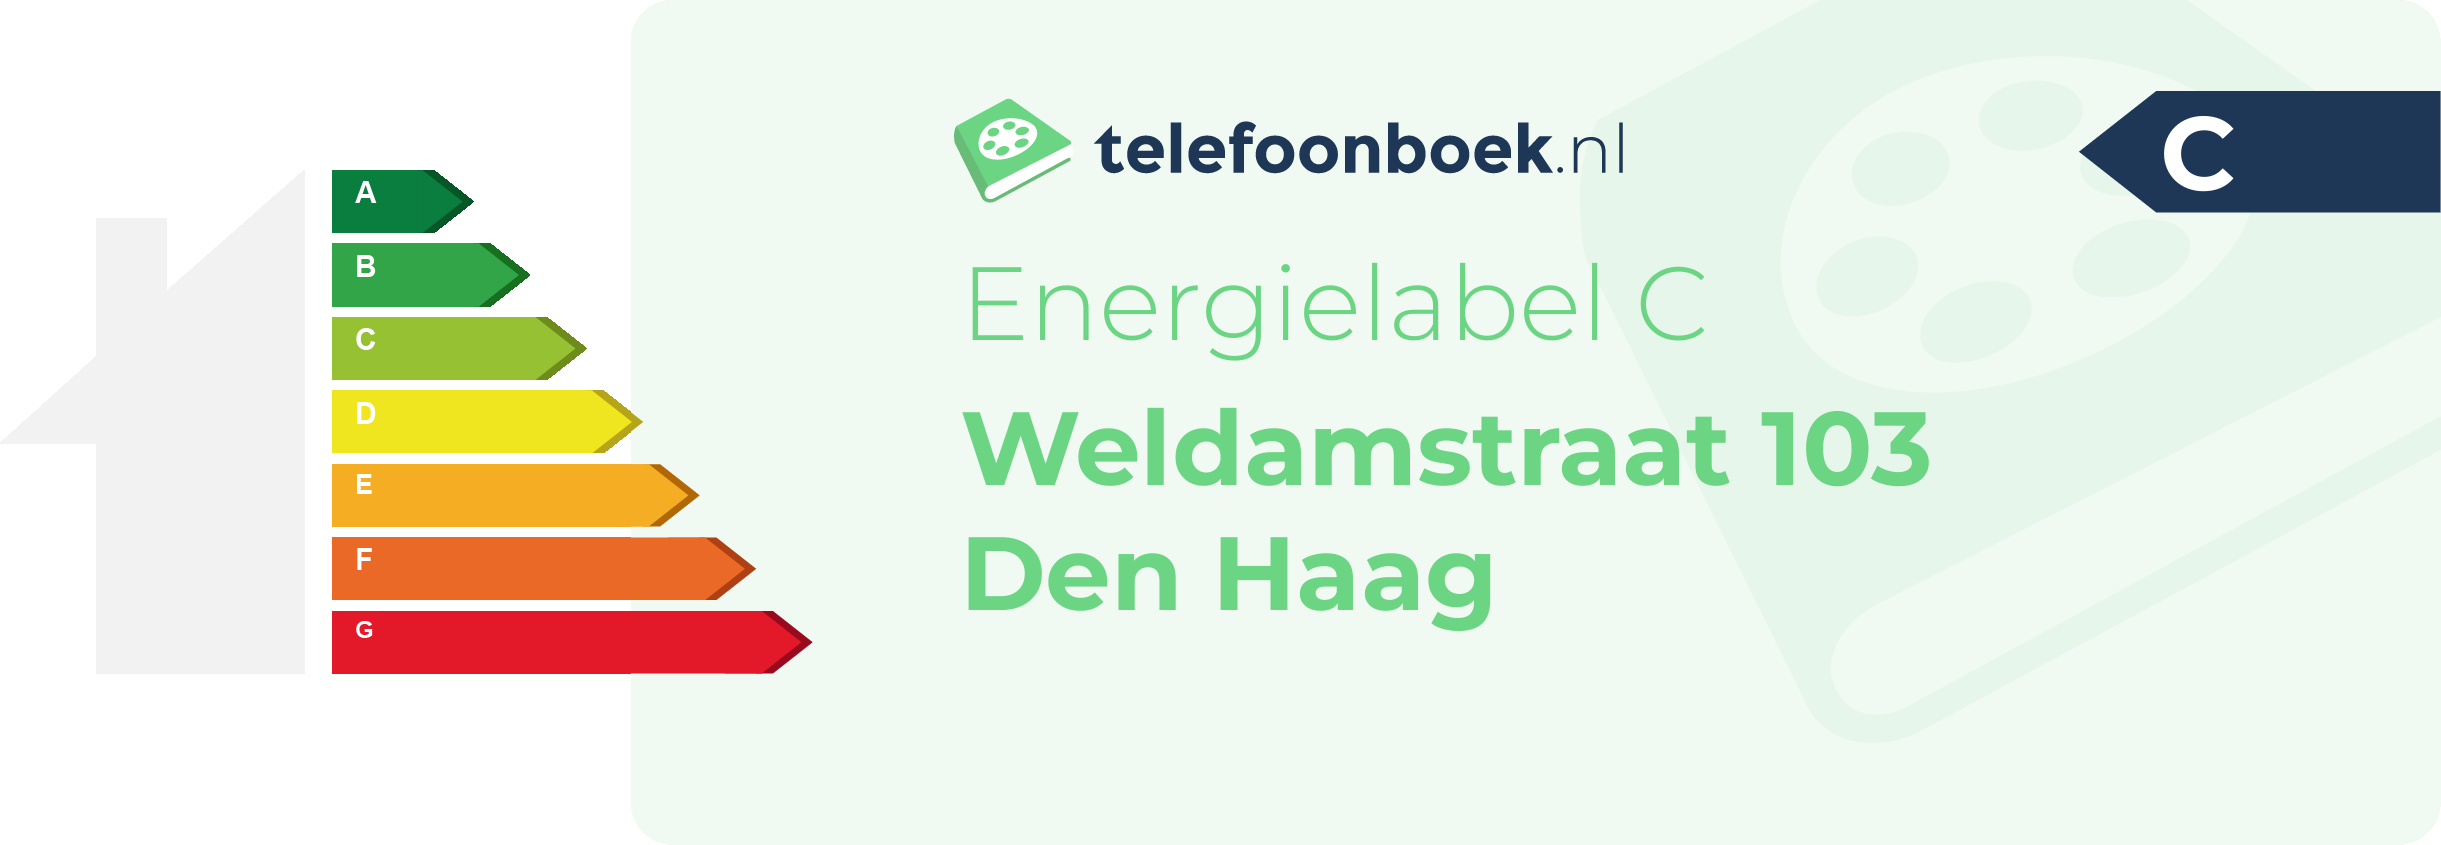 Energielabel Weldamstraat 103 Den Haag